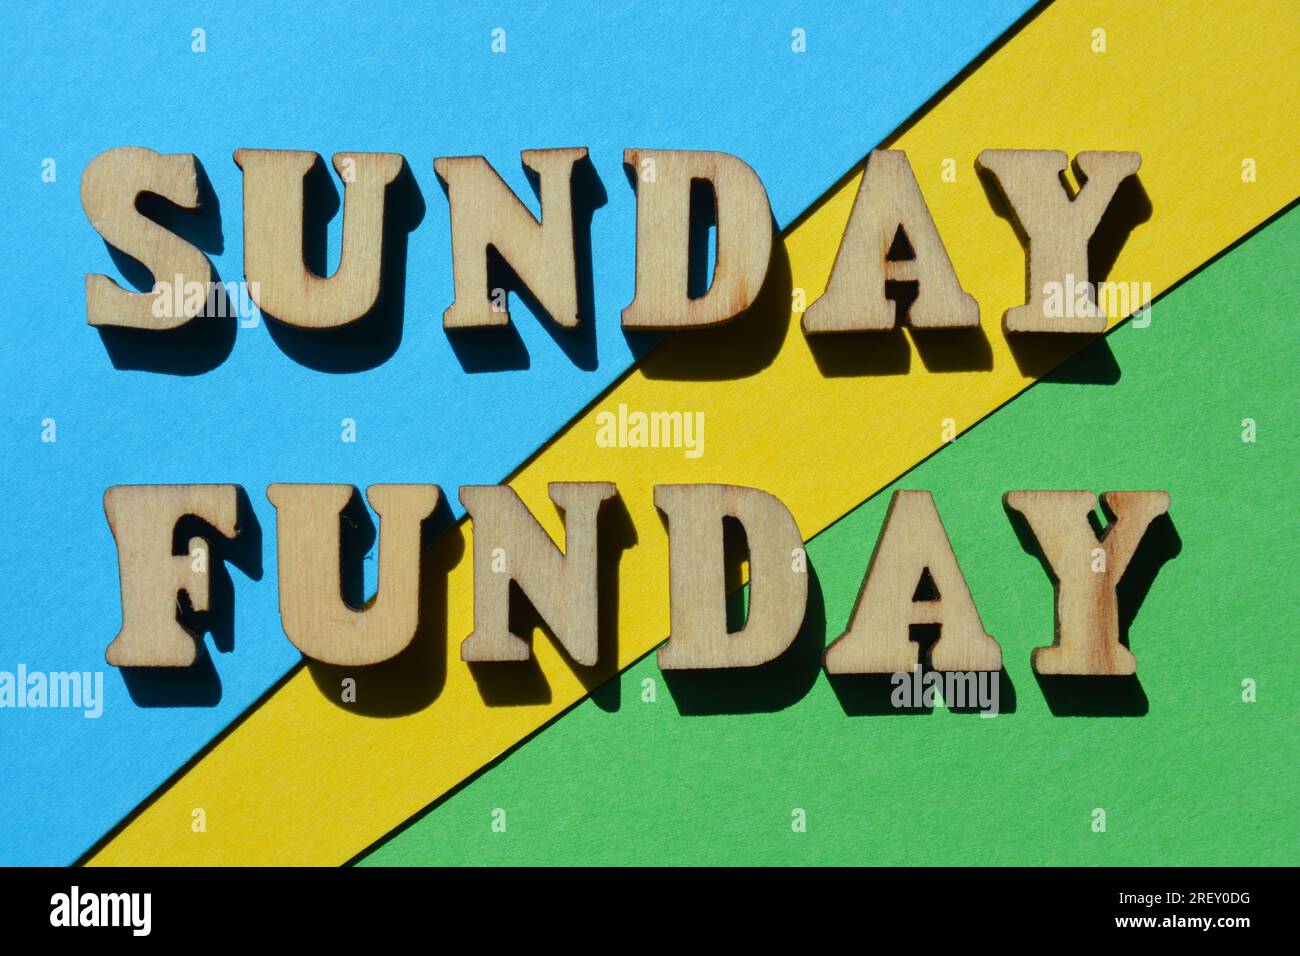 Sonntagsfunday, Wörter in hölzernen Buchstaben isoliert auf farbenfrohem Hintergrund Stockfoto